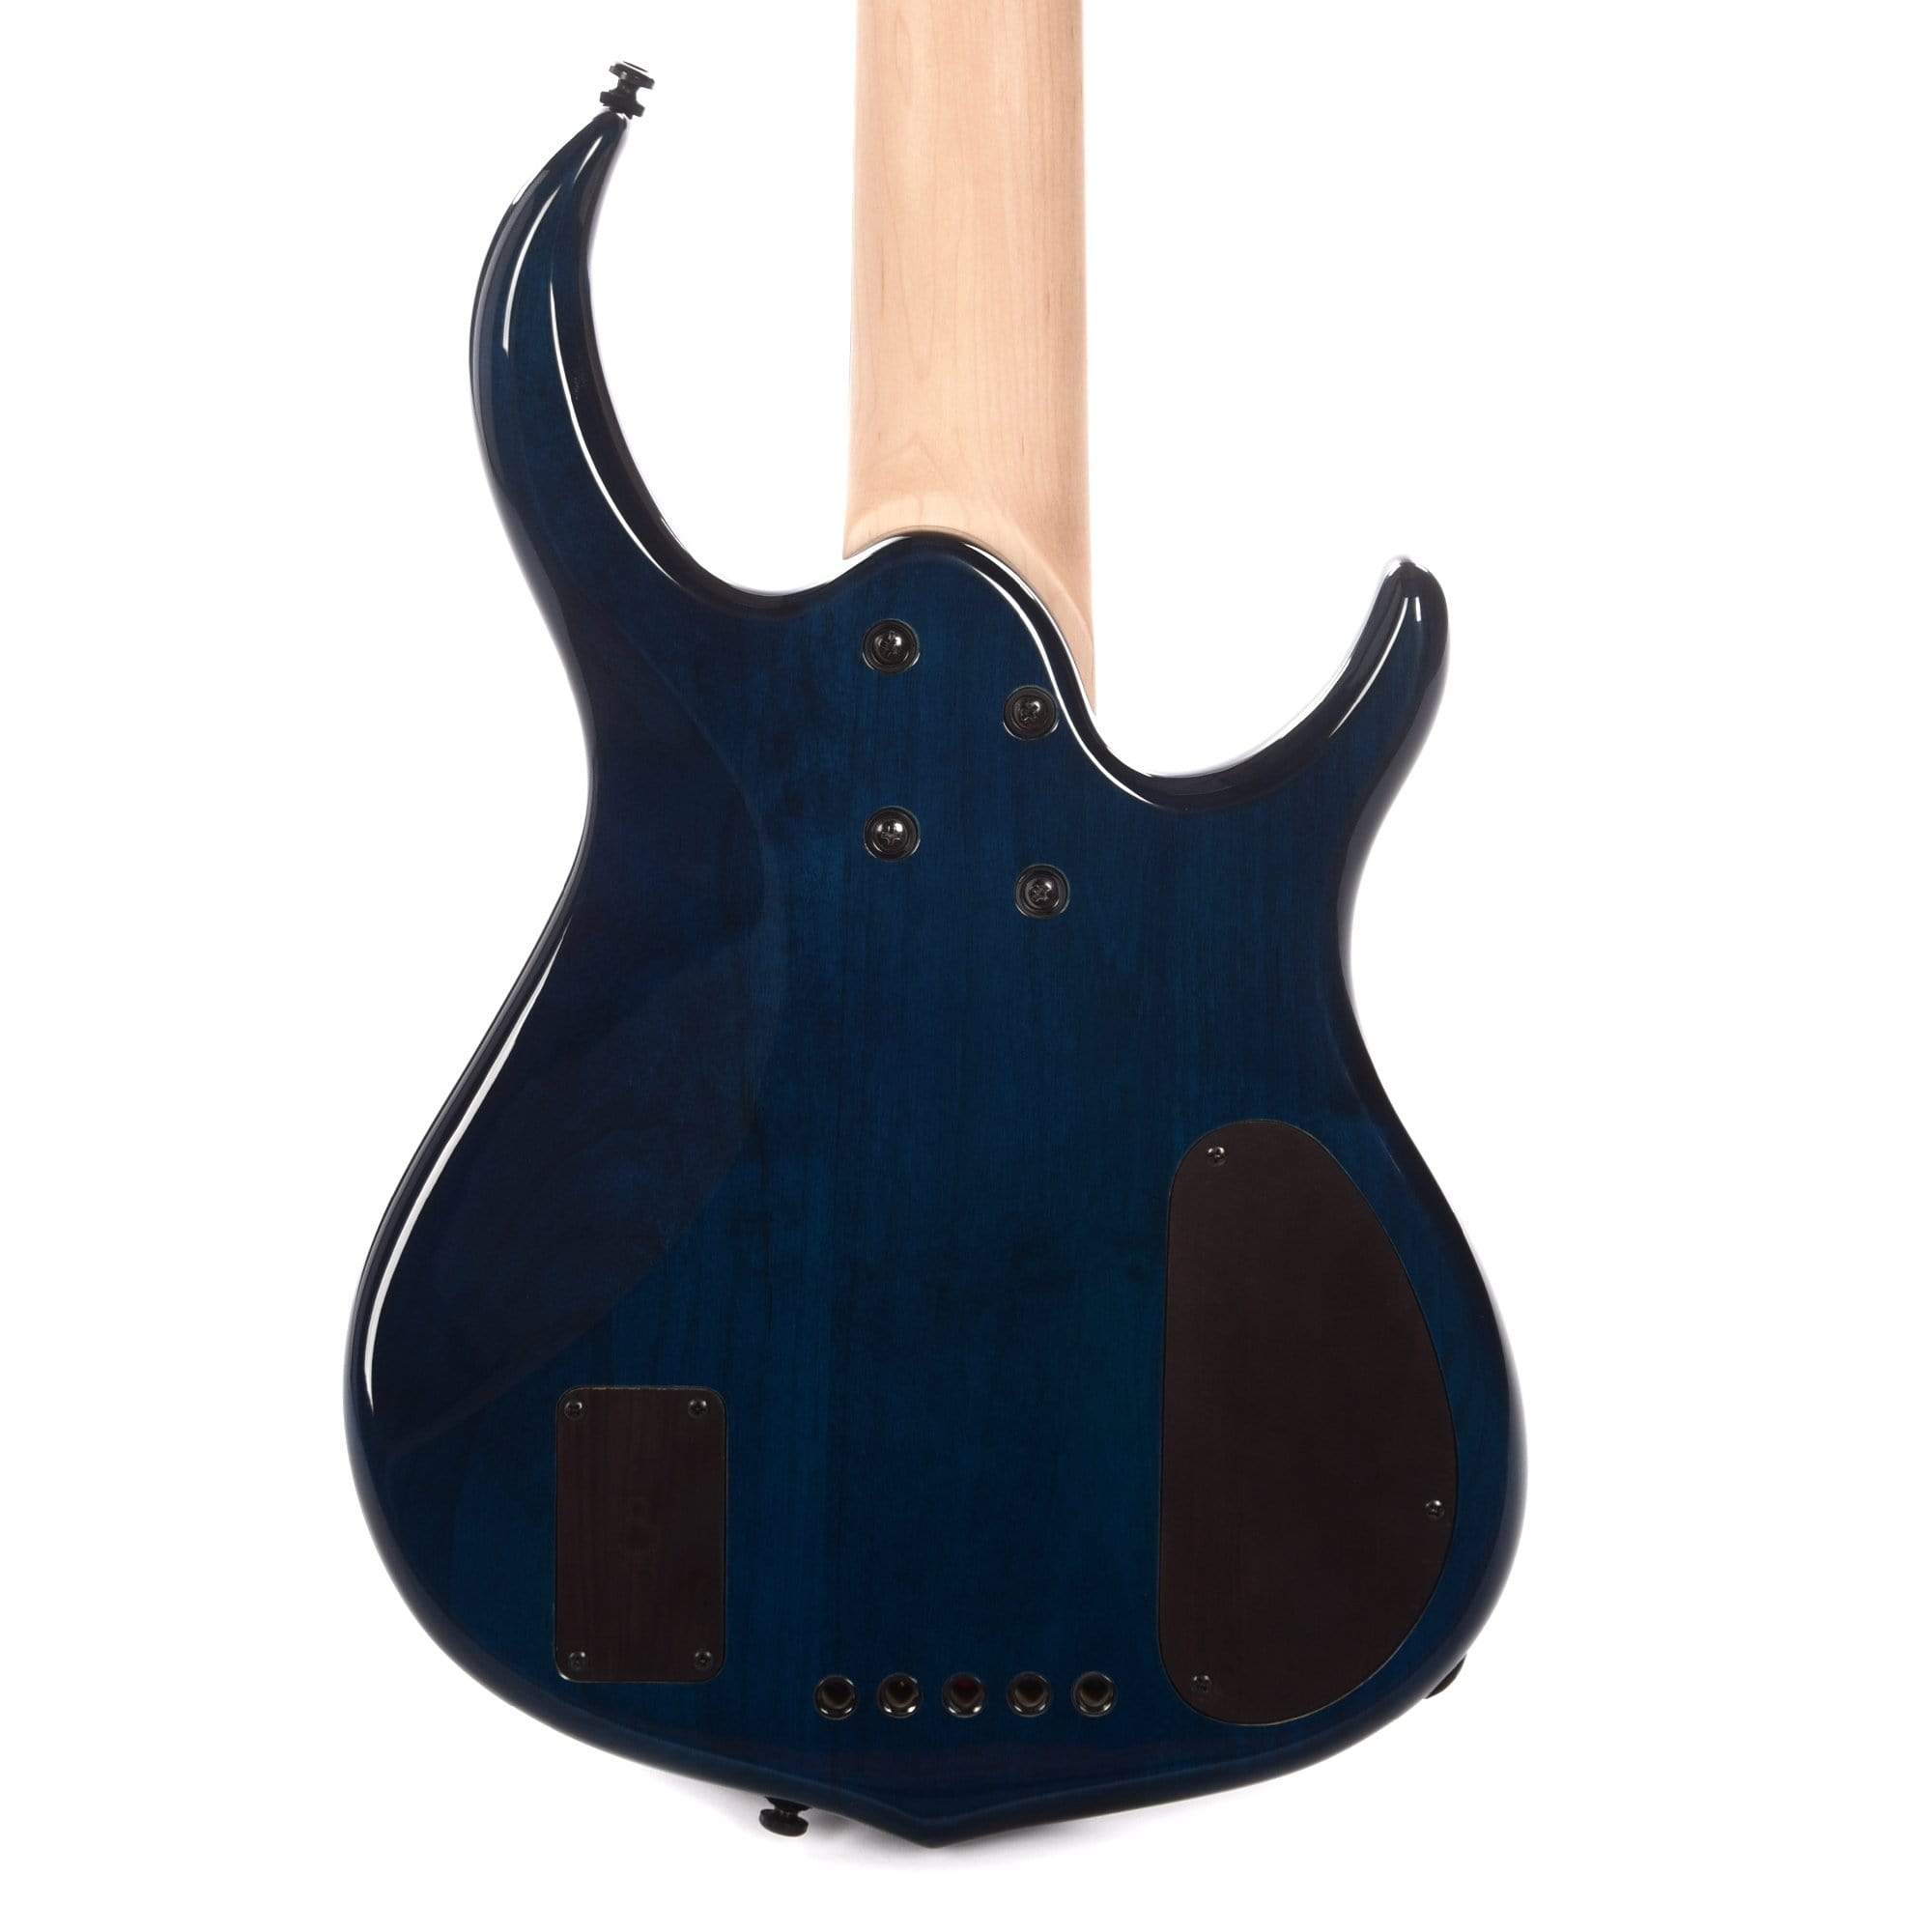 Sire Marcus Miller M7 Alder/Maple 5-String LEFTY Transparent Blue (2nd Gen) Bass Guitars / Left-Handed